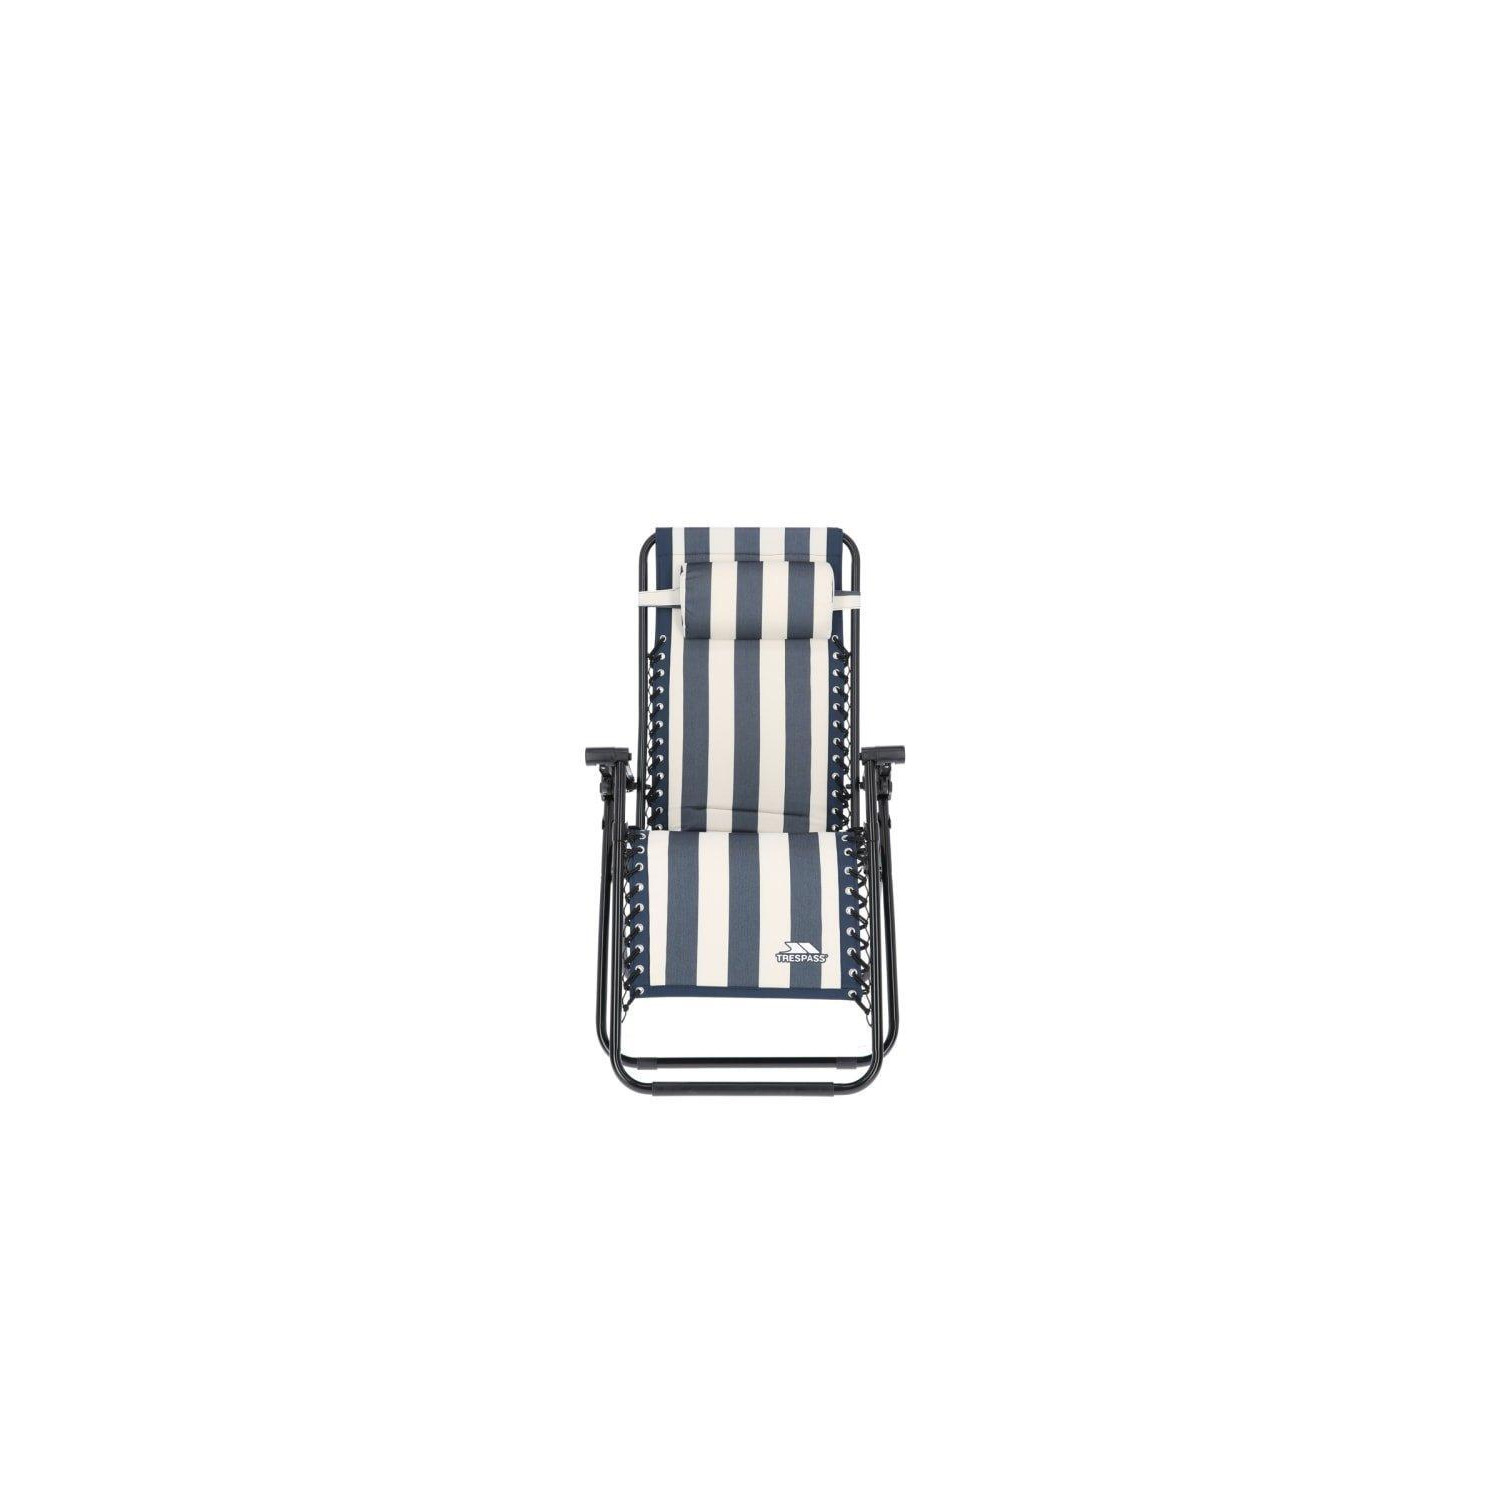 Glentilt Reclining Garden Chair Recliner - image 1